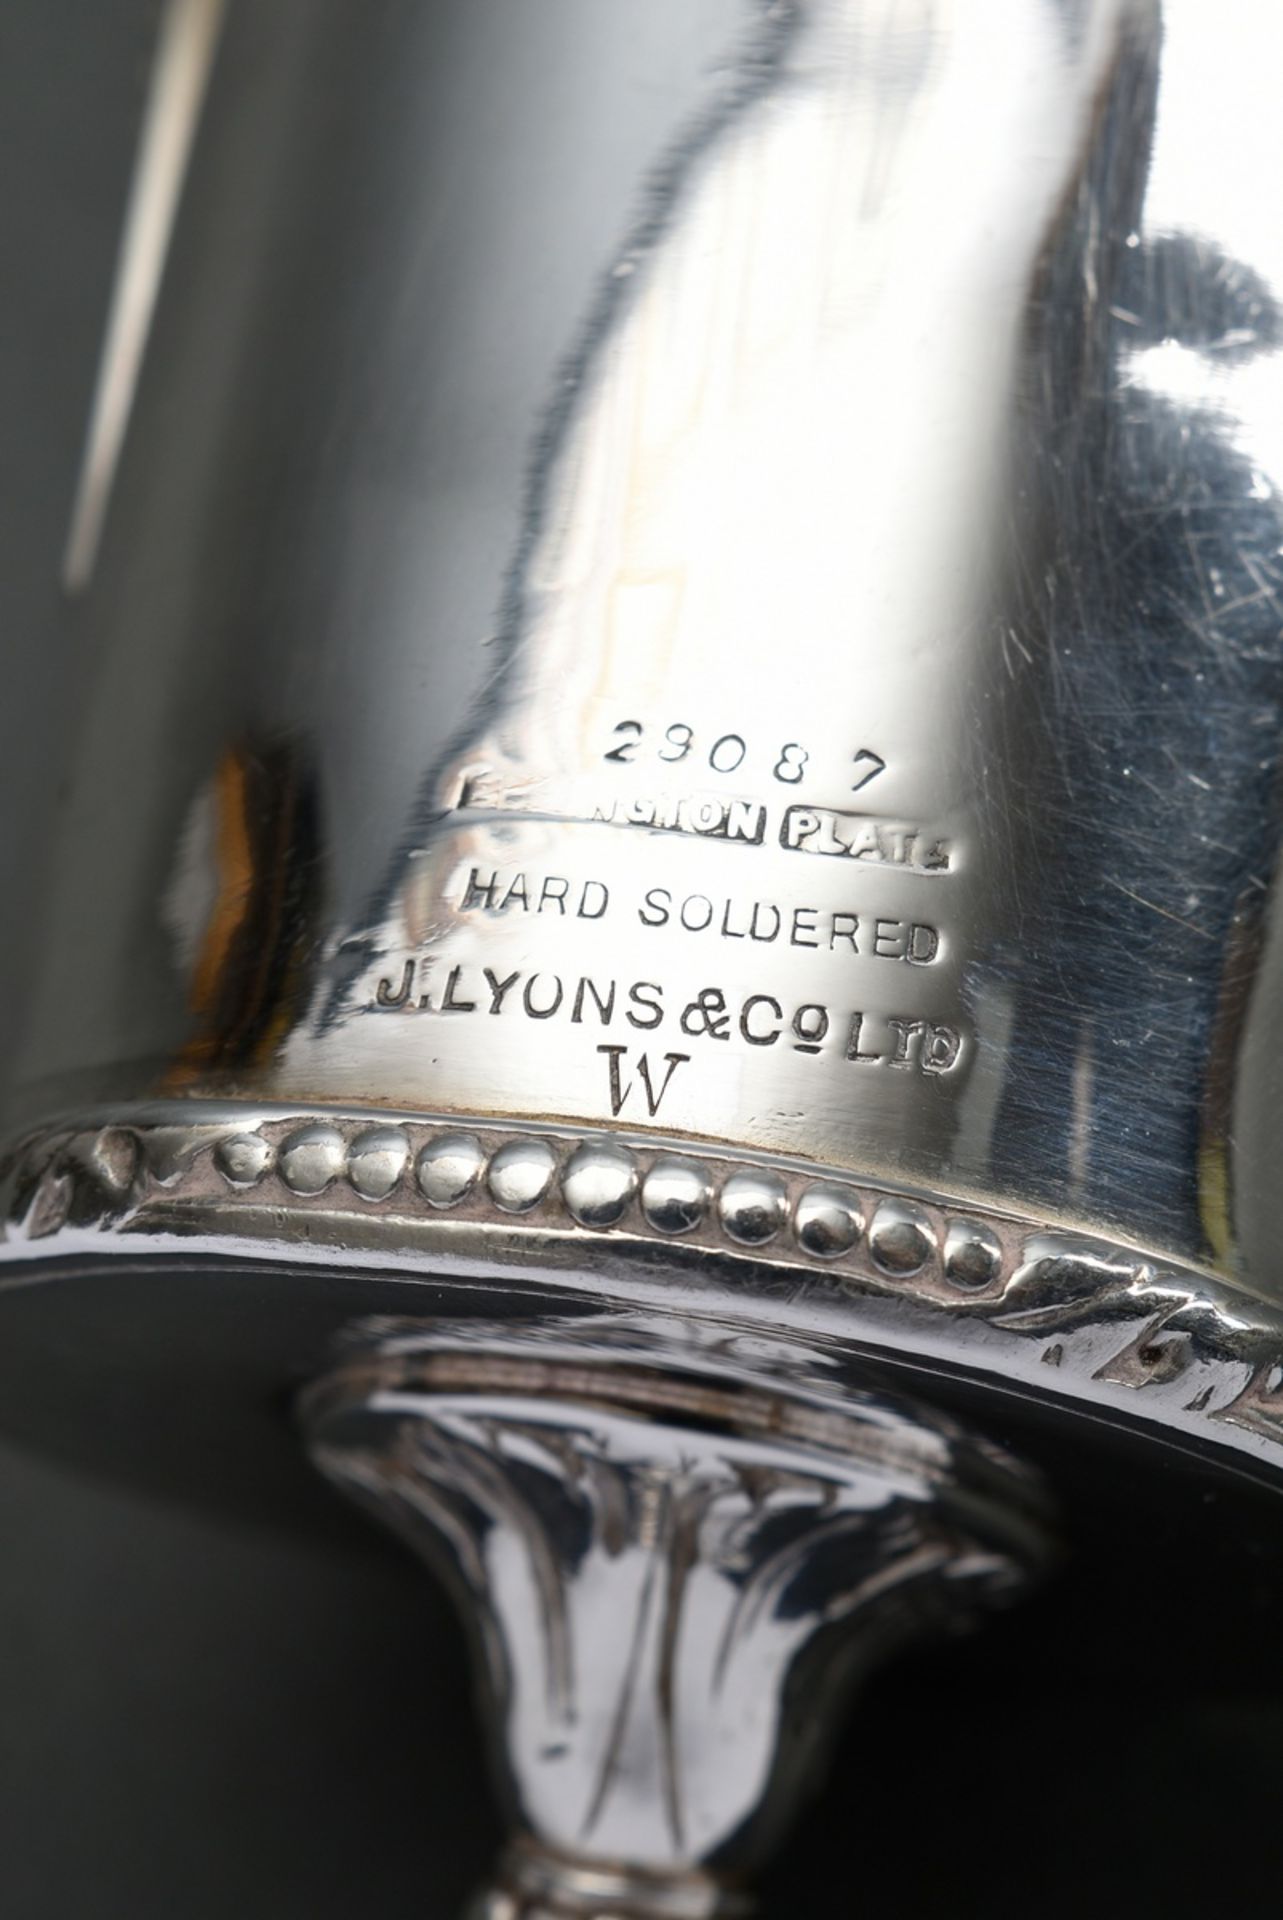 Versilberte Kaffeebohnenschaufel, bez.: "29087 Elkington Plate Hard Soldered J. Lyons & Co. Ltd. W" - Bild 3 aus 3